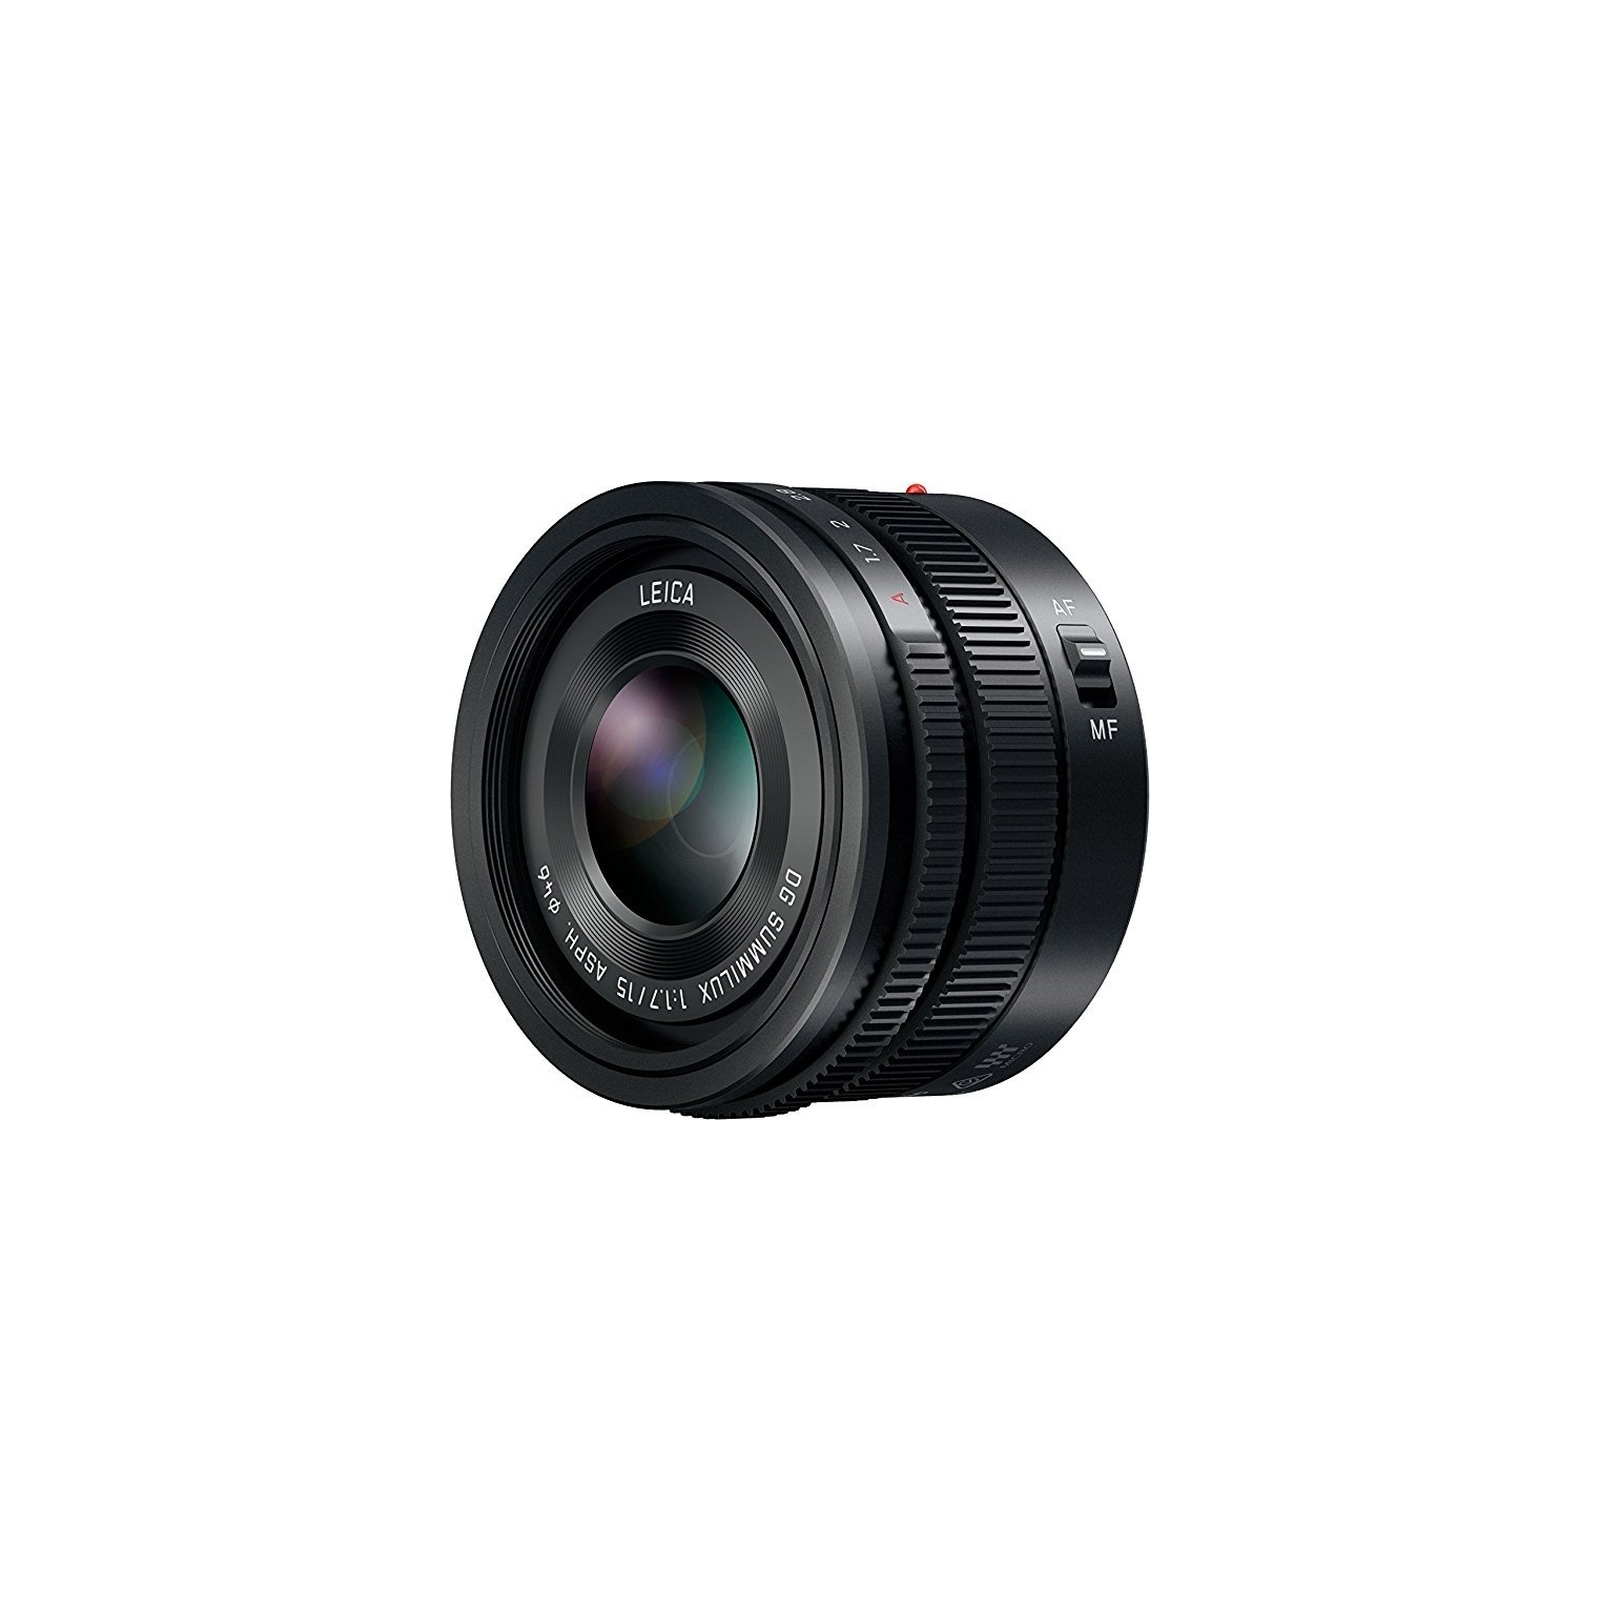 Объектив Panasonic Micro 4/3 Lens 15mm f/1.7 ASPH Black (H-X015E9-K) изображение 3